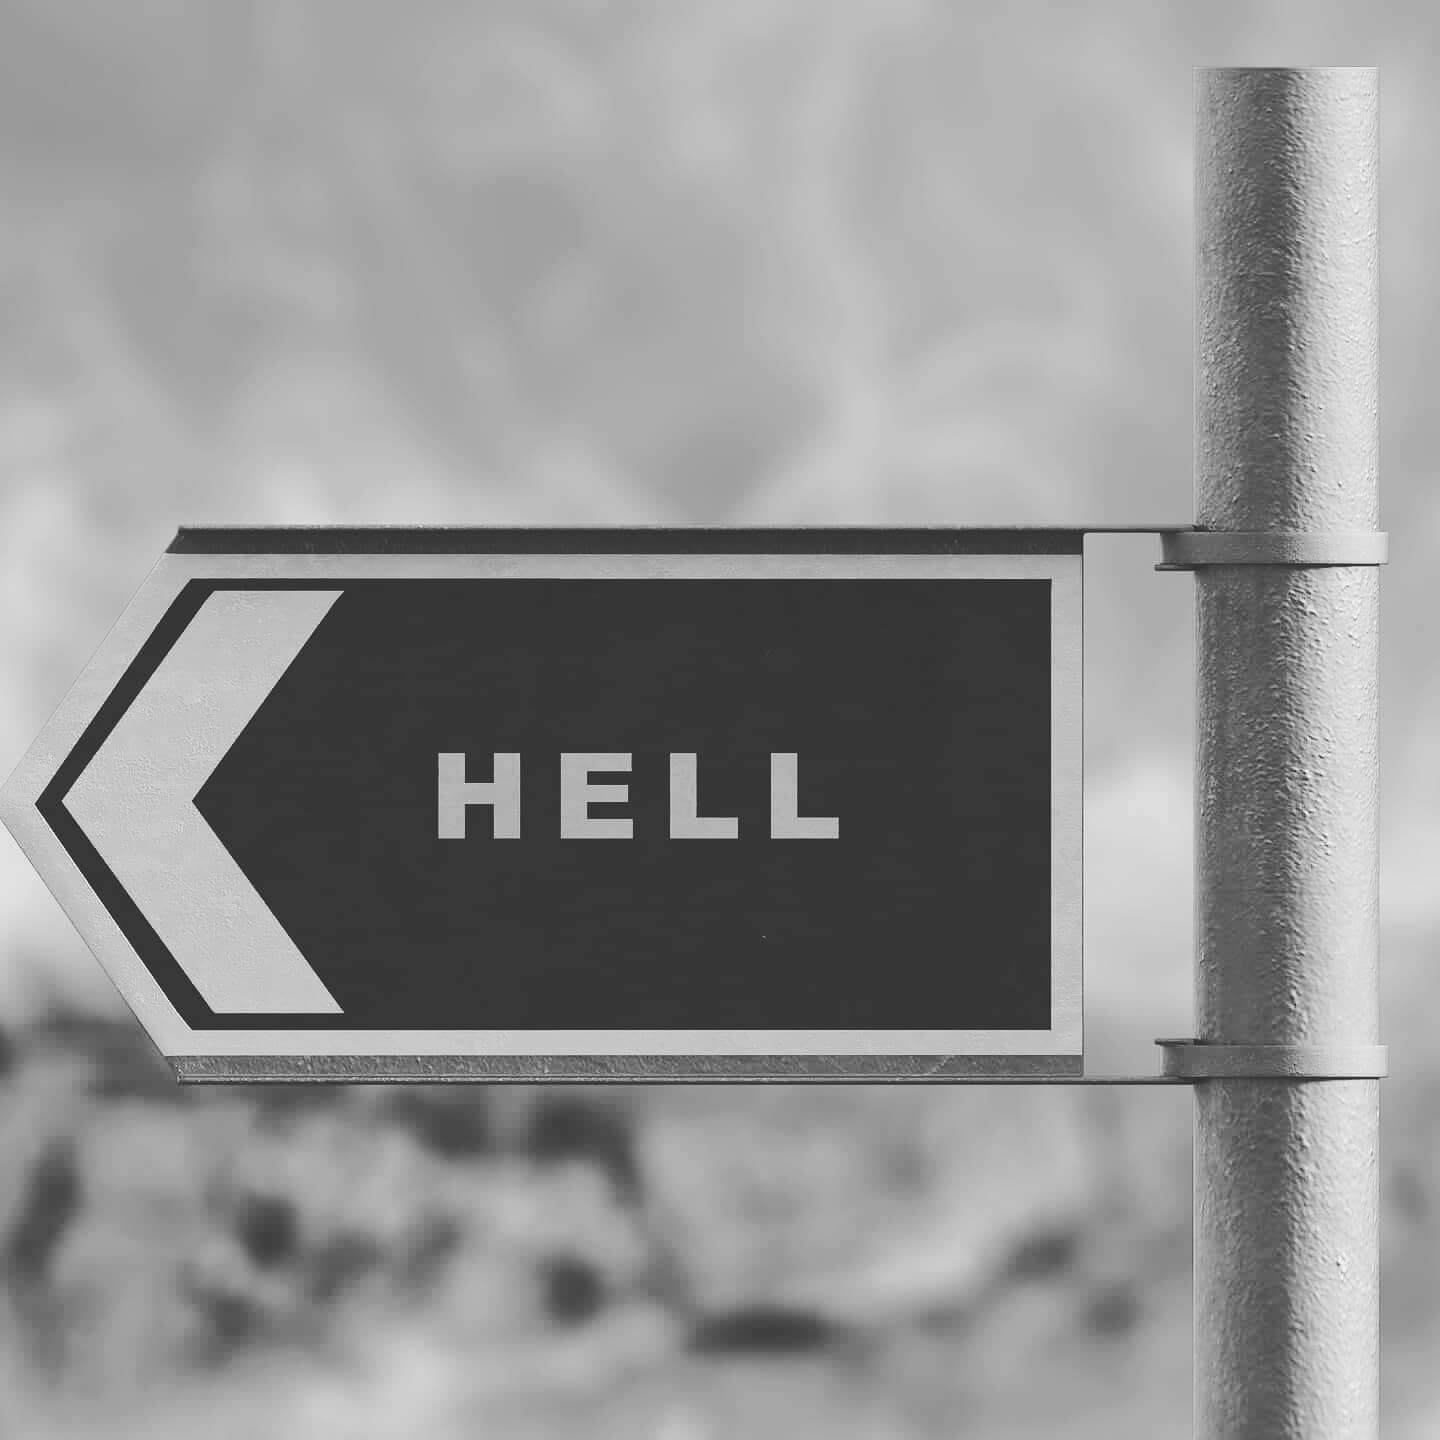 "Wohin zur Hölle", neuer Blogbeitrag von PAPIonSOUL zum Gedicht "Bis zur Hölle ists kurz"
.
.
.
.
.
.
.
#poesie #hölle #seele #himmel #glaube #leben #Christentum